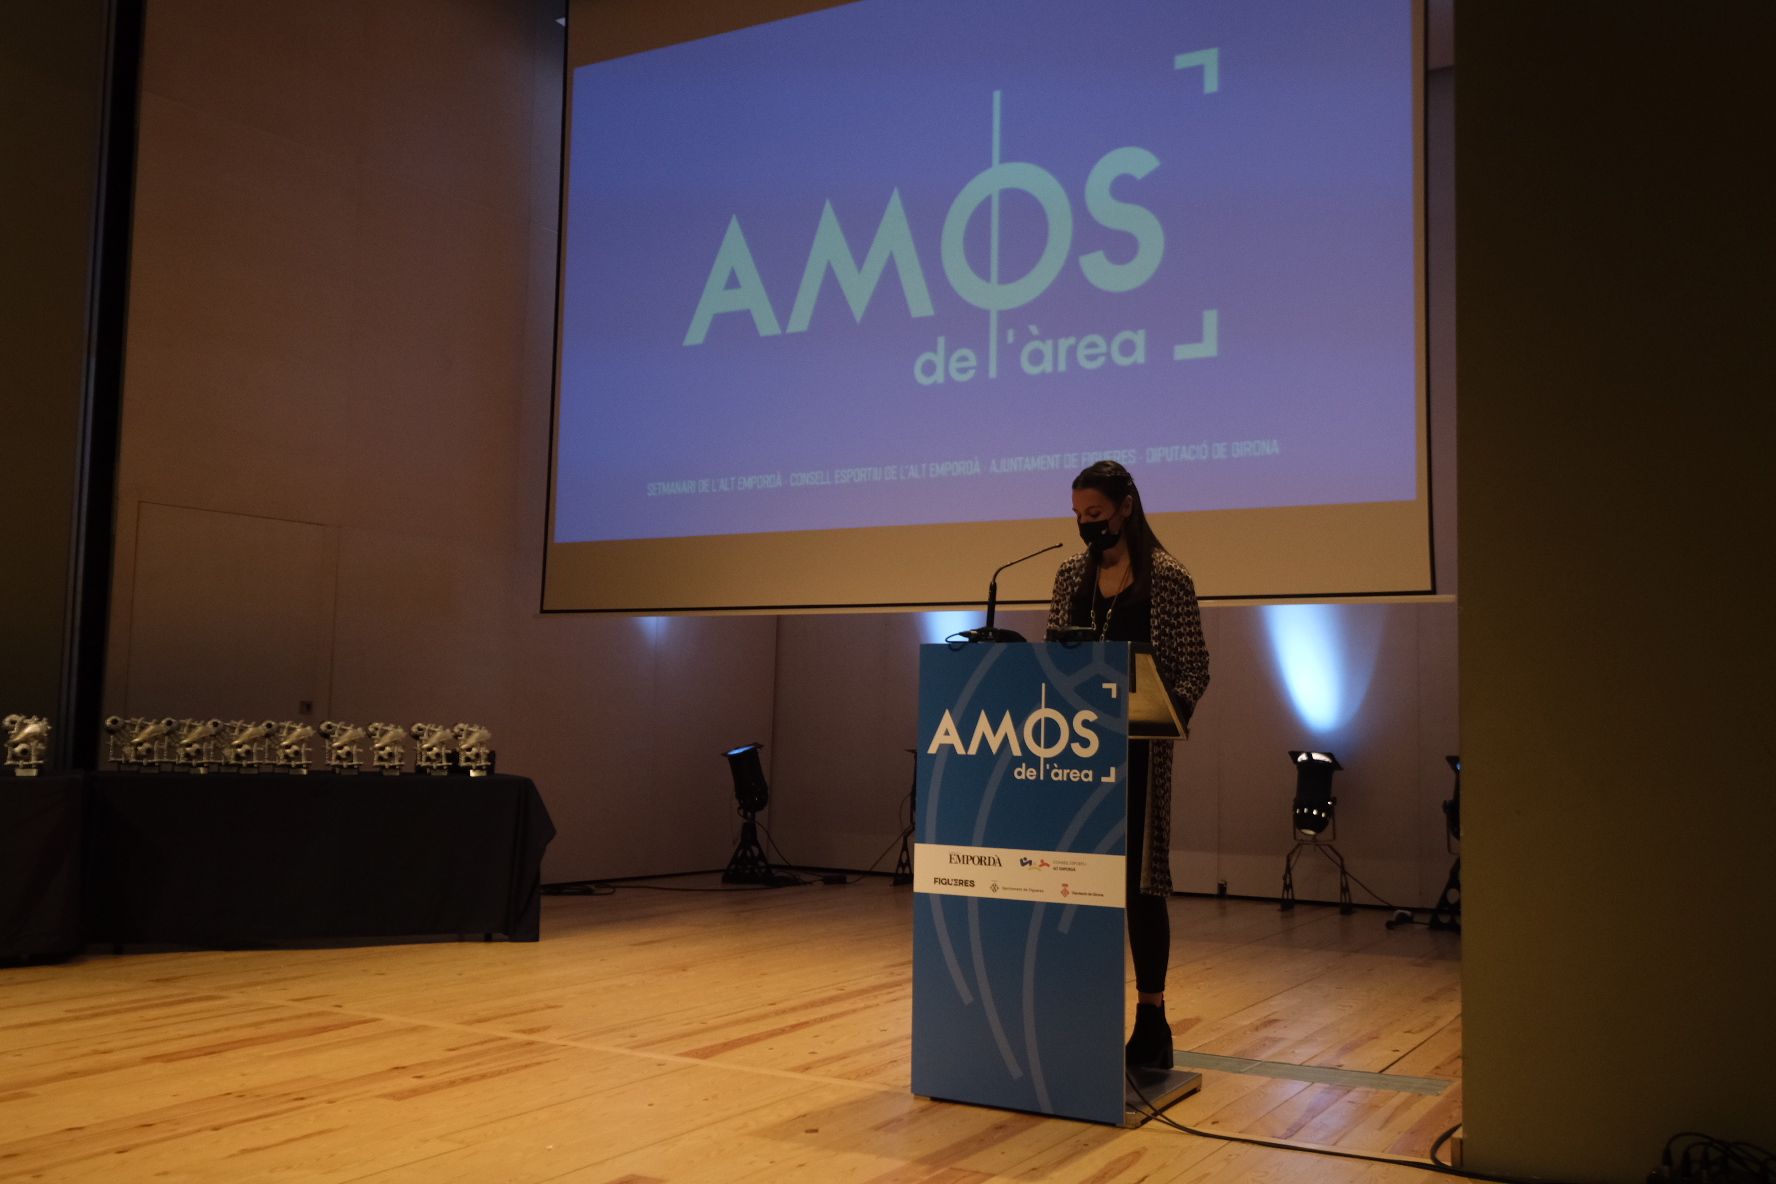 Els guardonats dels Premis Amos de l'Àrea reben el seu reconeixement